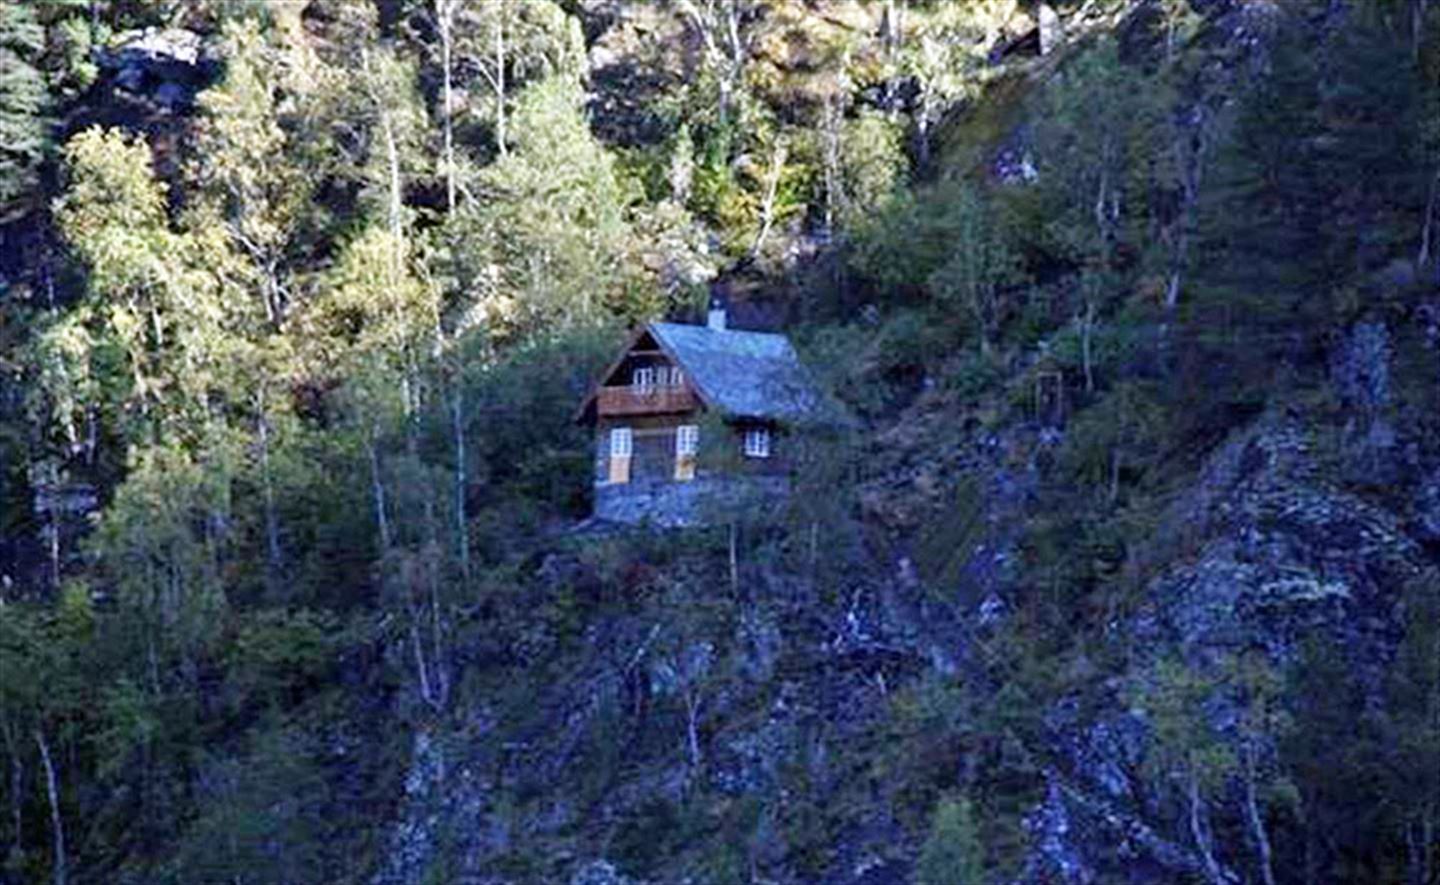 Huset til Ludwig Wittgenstein ligg 50 meter oppe i fjellsida ved Eidsvatnet i Skjolden. (foto: Arlen Synnøve Bidne/Vestland fylkeskommune)